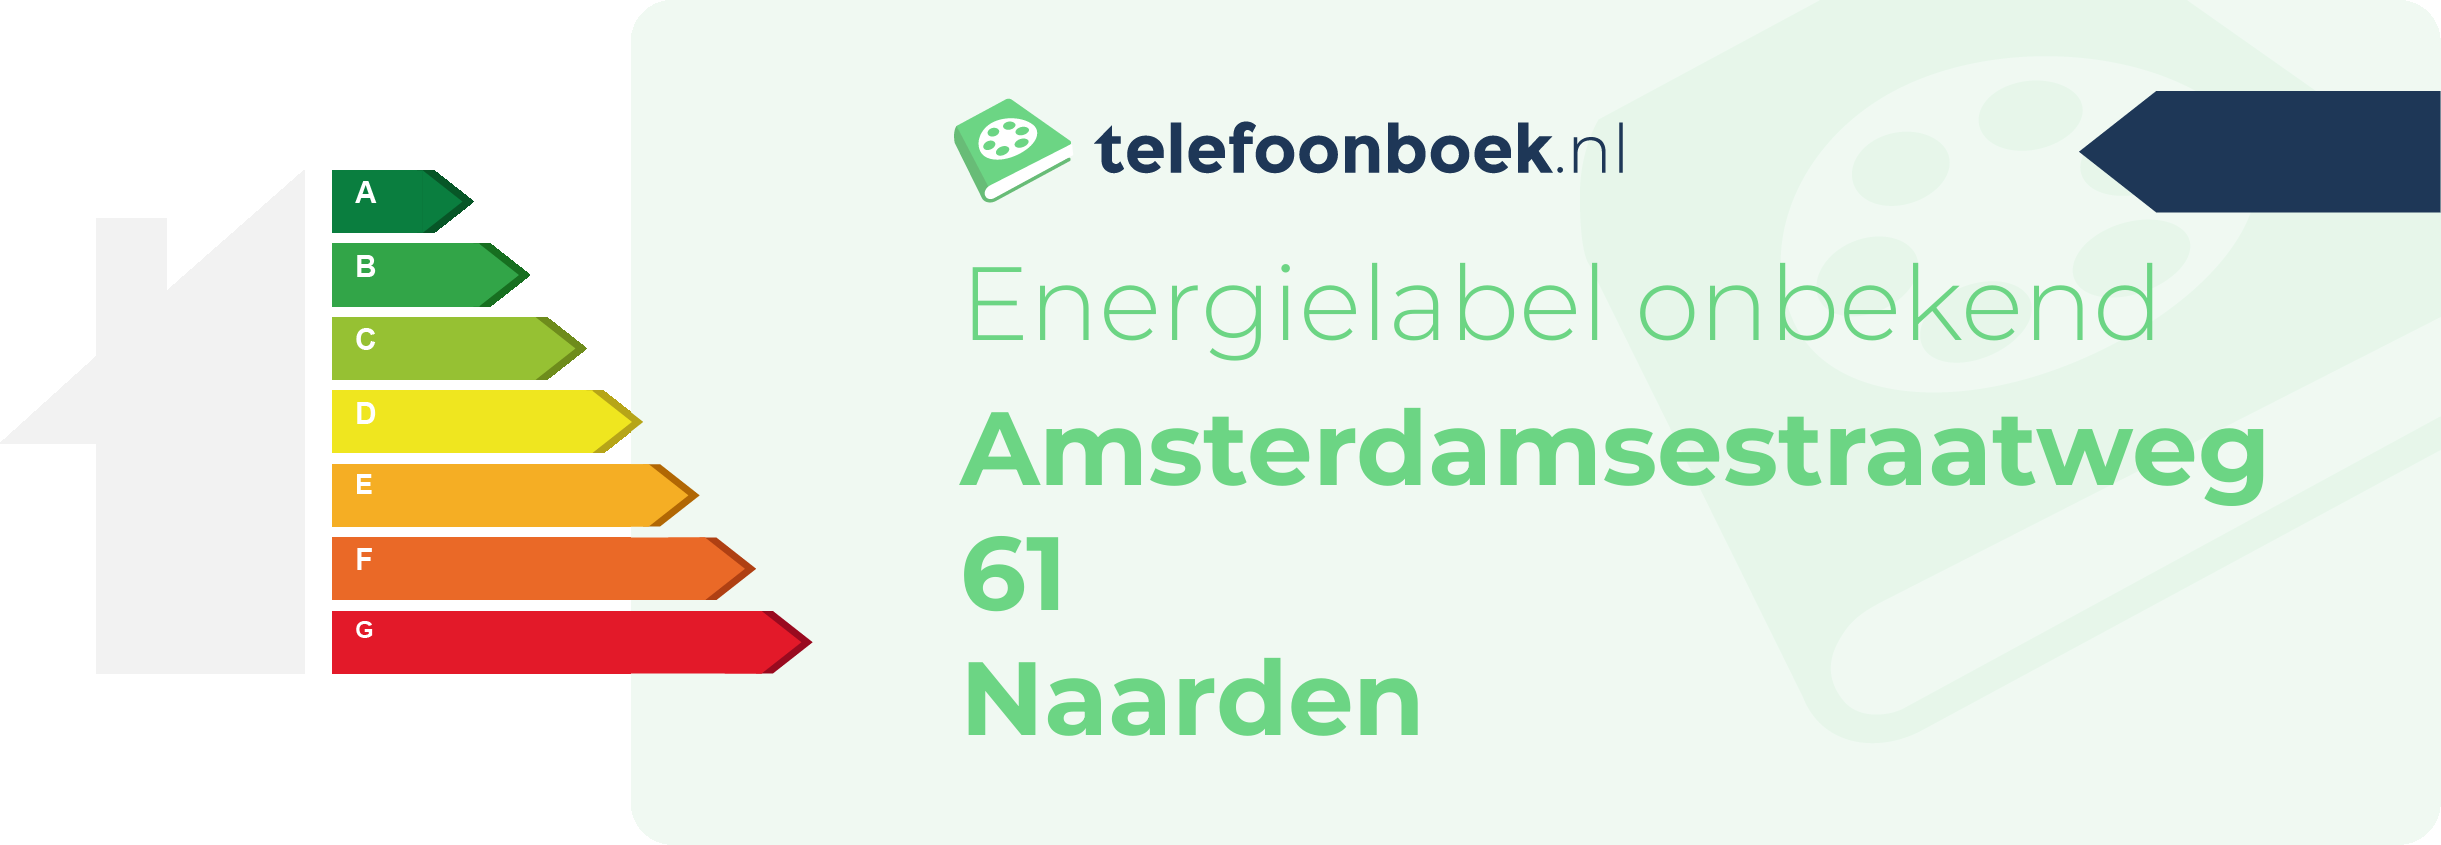 Energielabel Amsterdamsestraatweg 61 Naarden